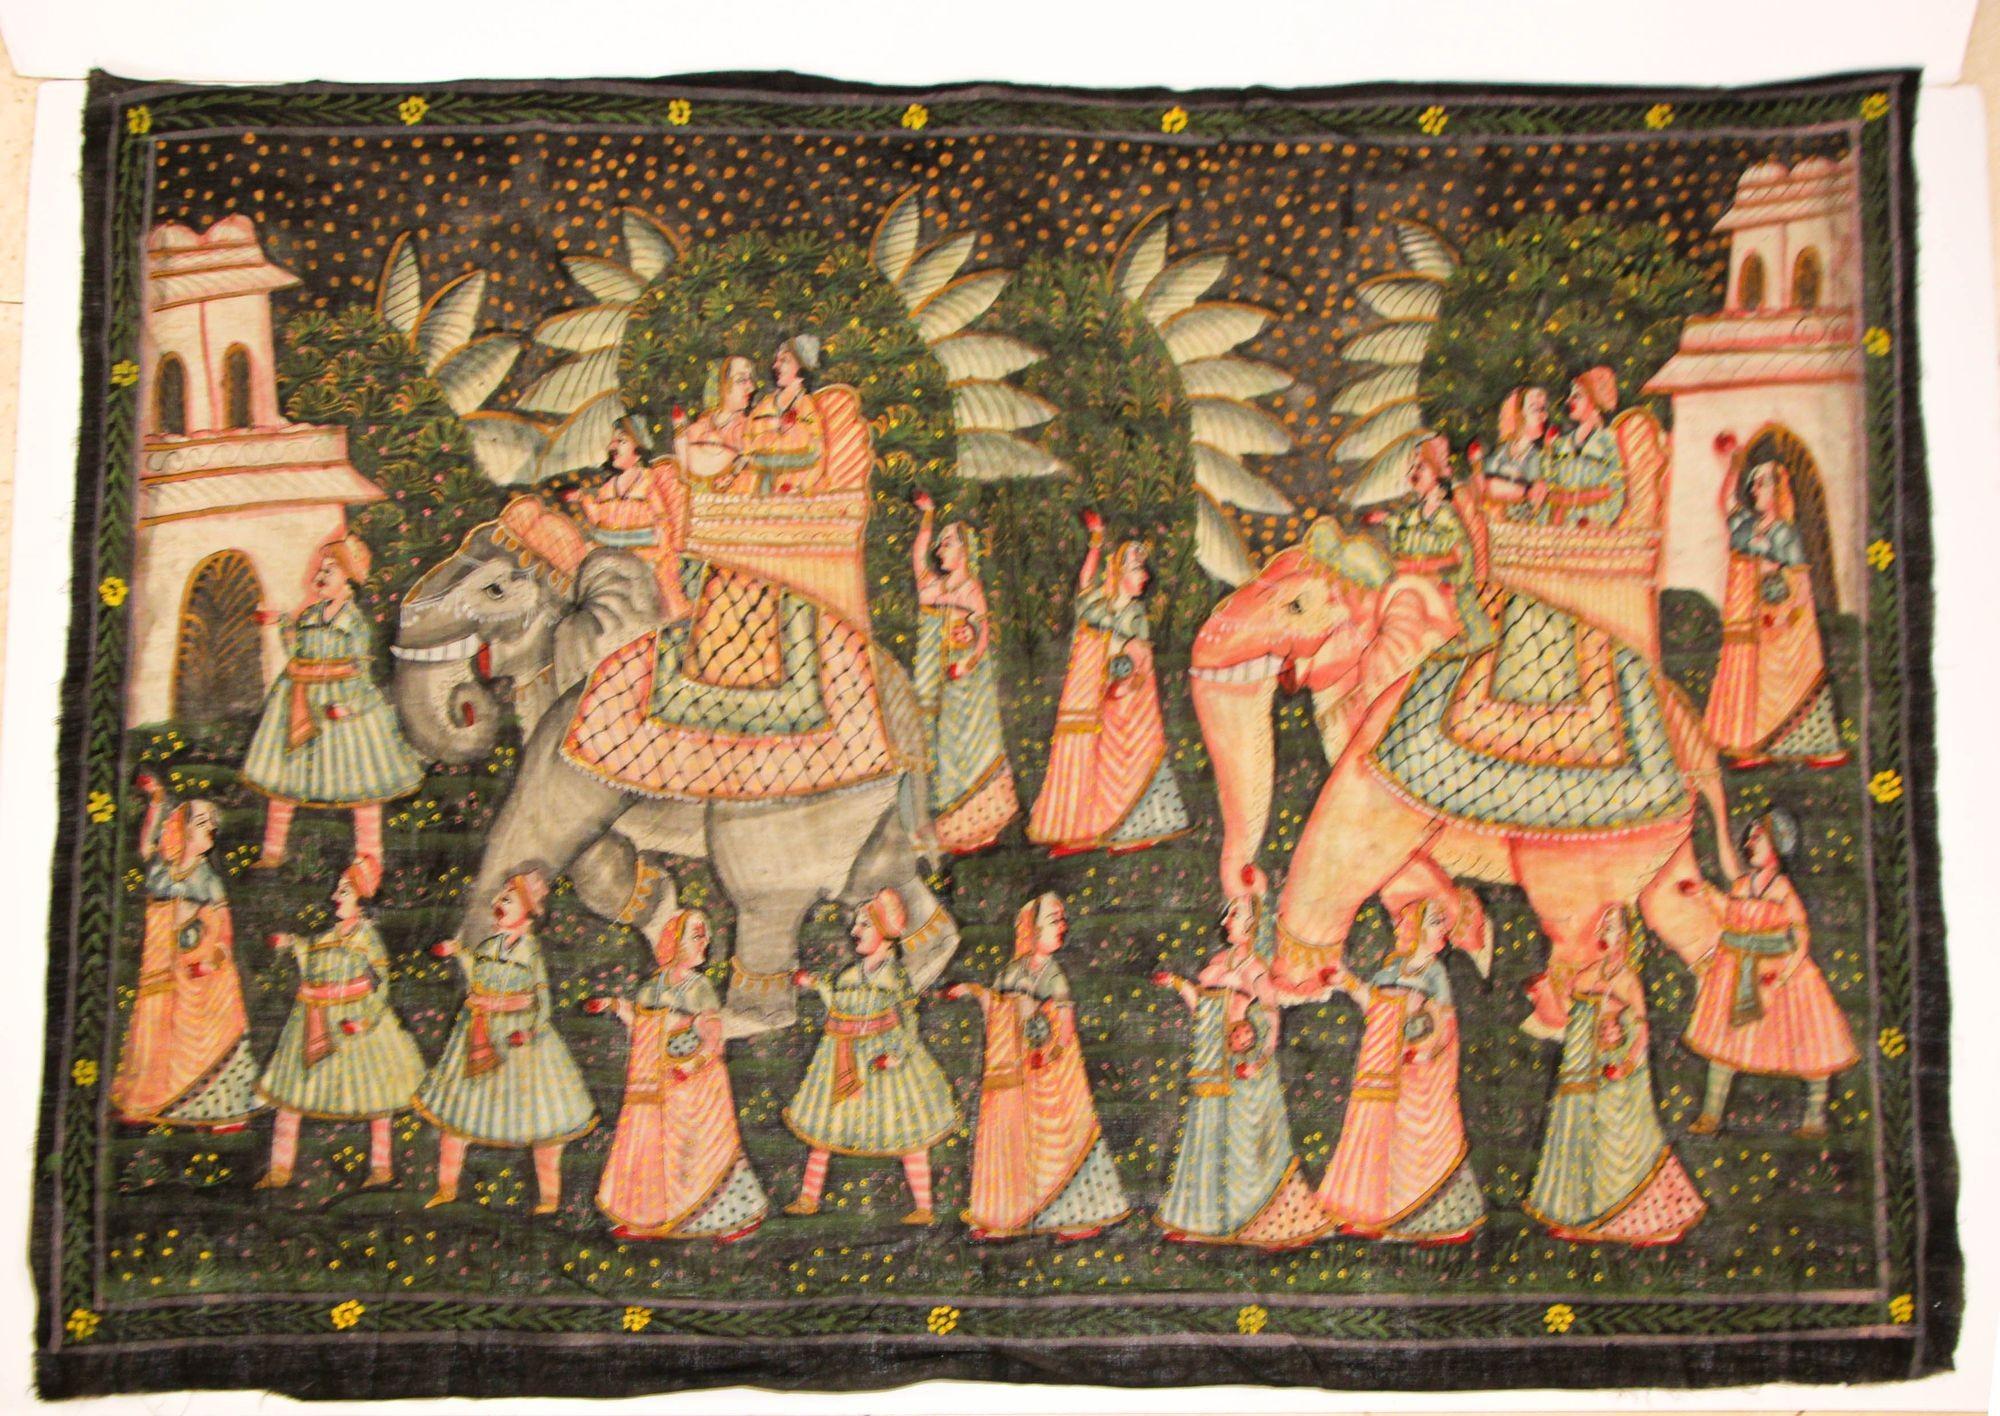 Grande peinture en soie moghole vintage d'une procession royale de Maharaja, deux couples royaux sur un éléphant, probablement une procession de mariage avec des serviteurs marchant autour d'eux.
Scène moghole, peinte à la main sur soie, très